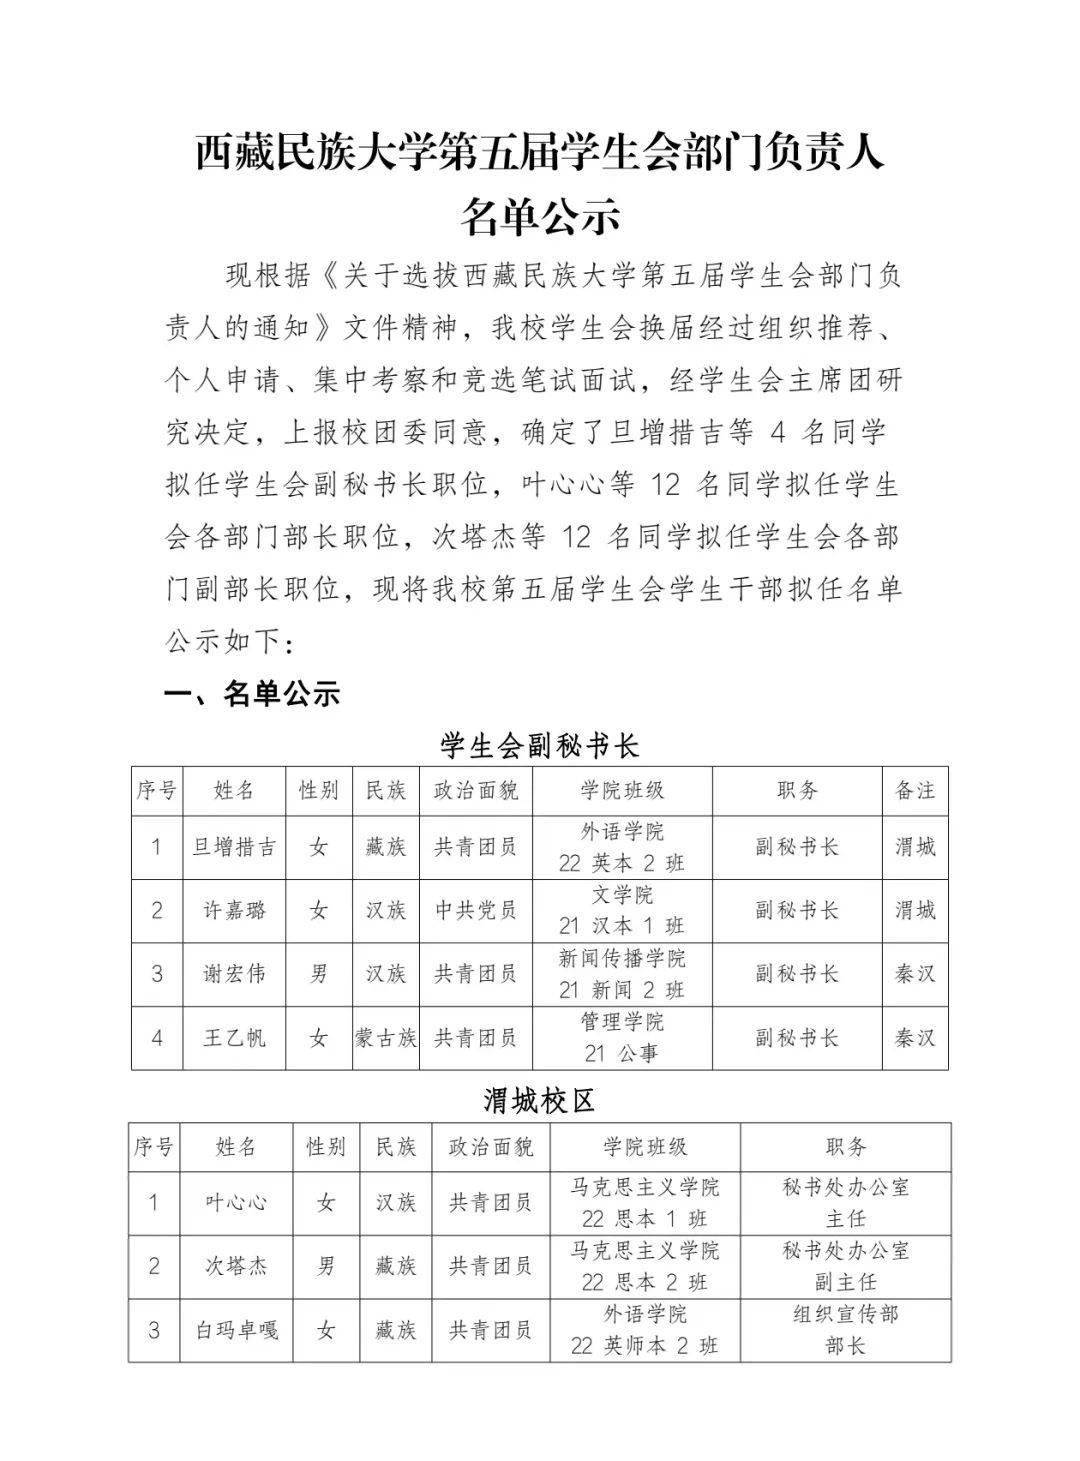 西藏民族大学第五届学生会部门负责人名单公示